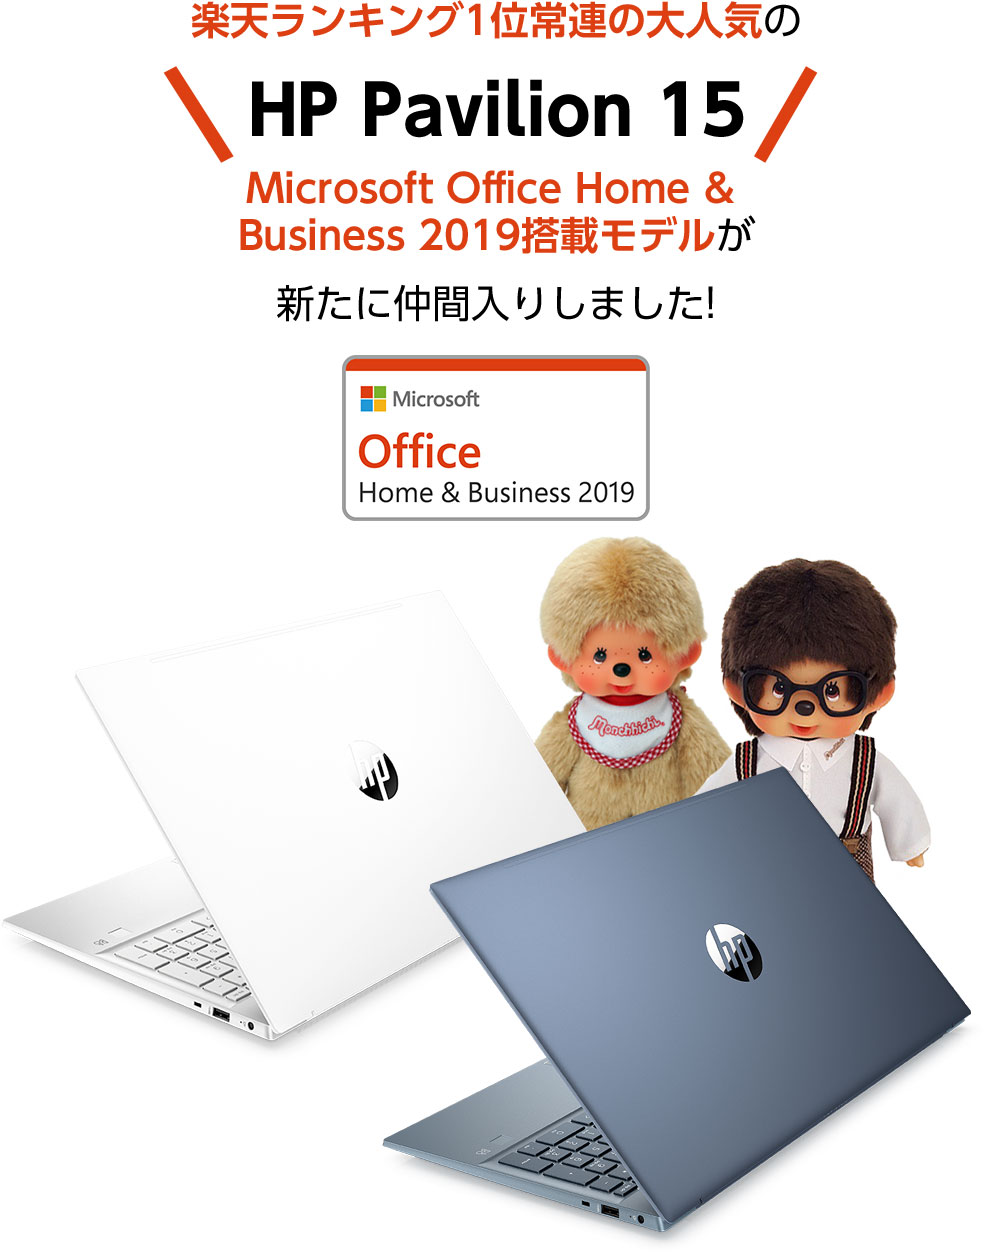 楽天ランキング1位常連の大人気のHP Pavilion 15 Microsoft Office Home & Business 2019搭載モデルが新たに仲間入りしました!